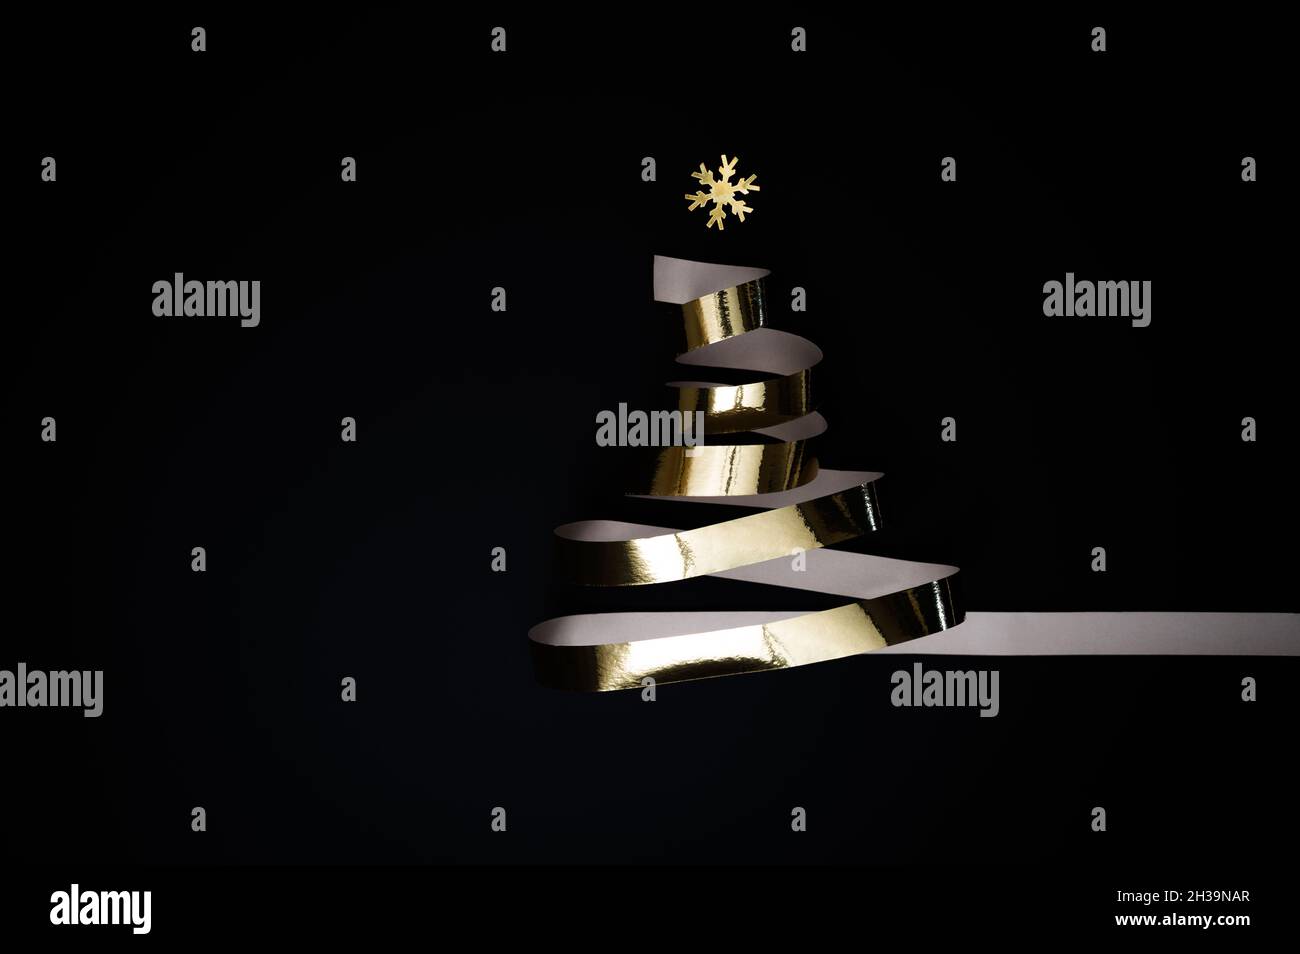 Fête de Noël ou concept de la Saint-Sylvestre : arbre de Noël en ruban d'or brillant ou en banderole dorée sur fond noir. Banque D'Images